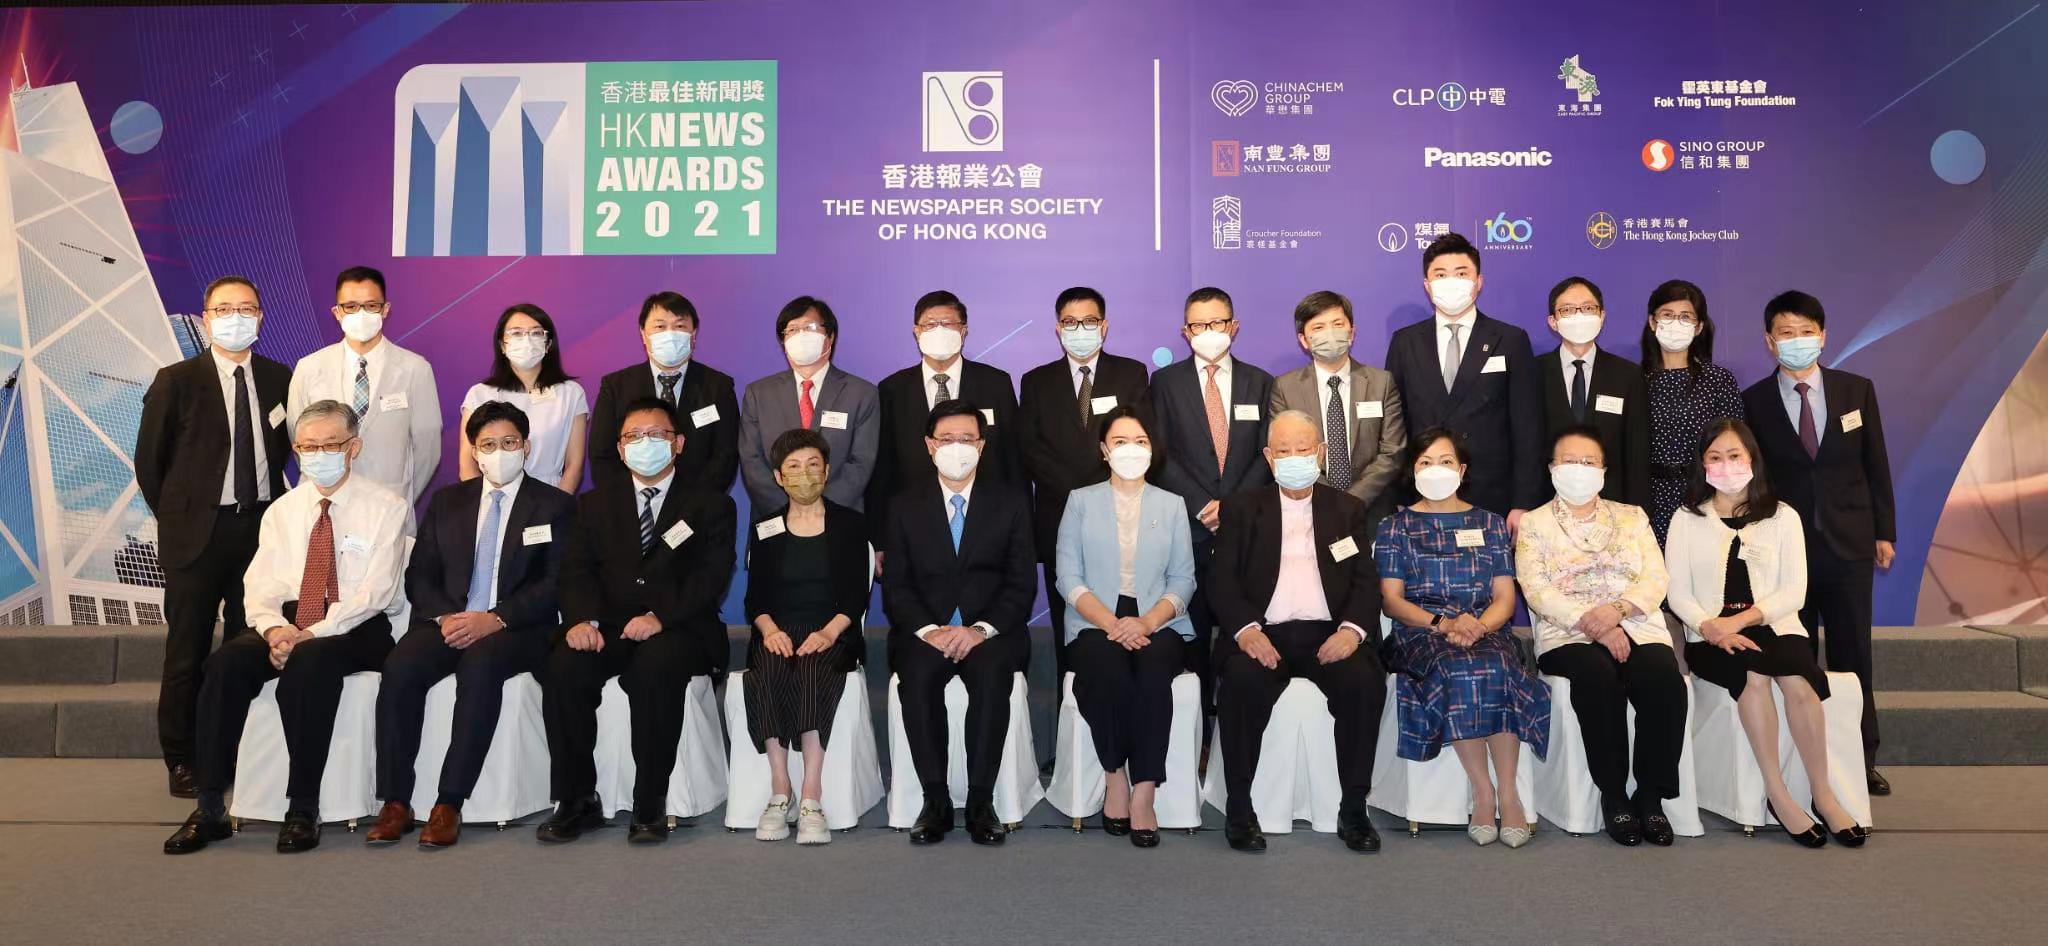 “2021香港最佳新聞獎”舉行頒獎典禮盧新寧出席